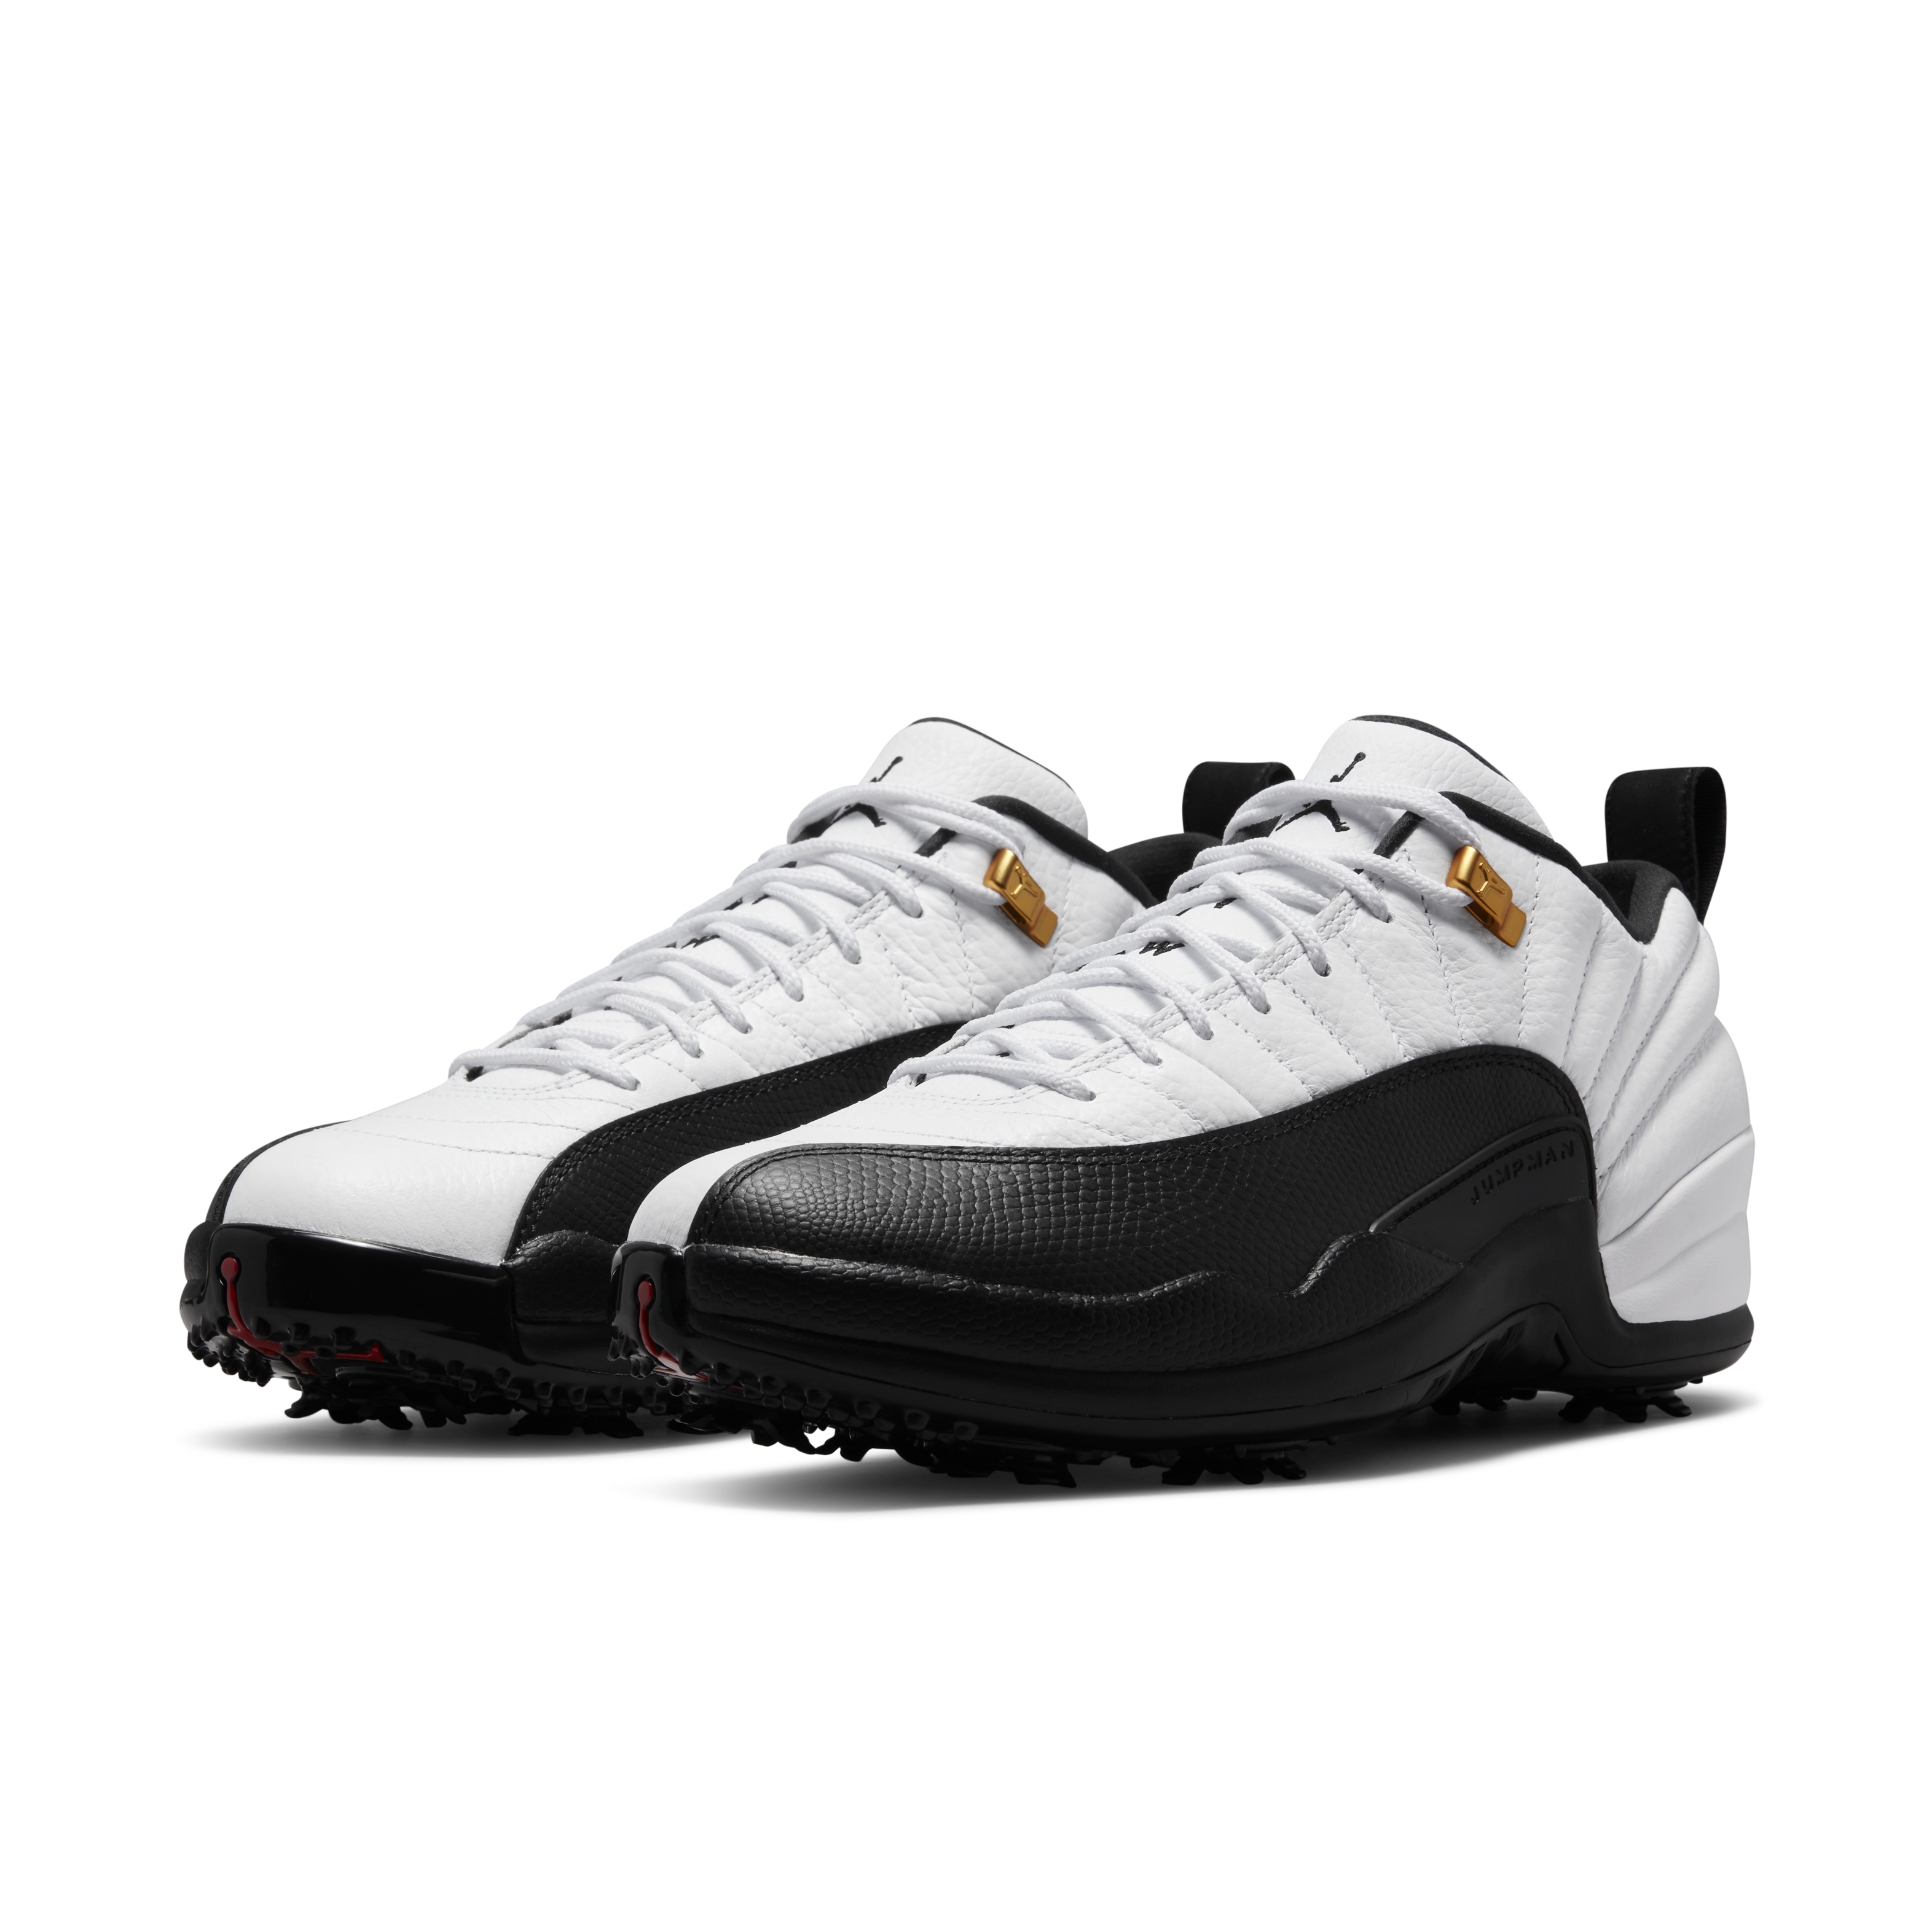 Air Jordan 12 Low Golf Shoes.